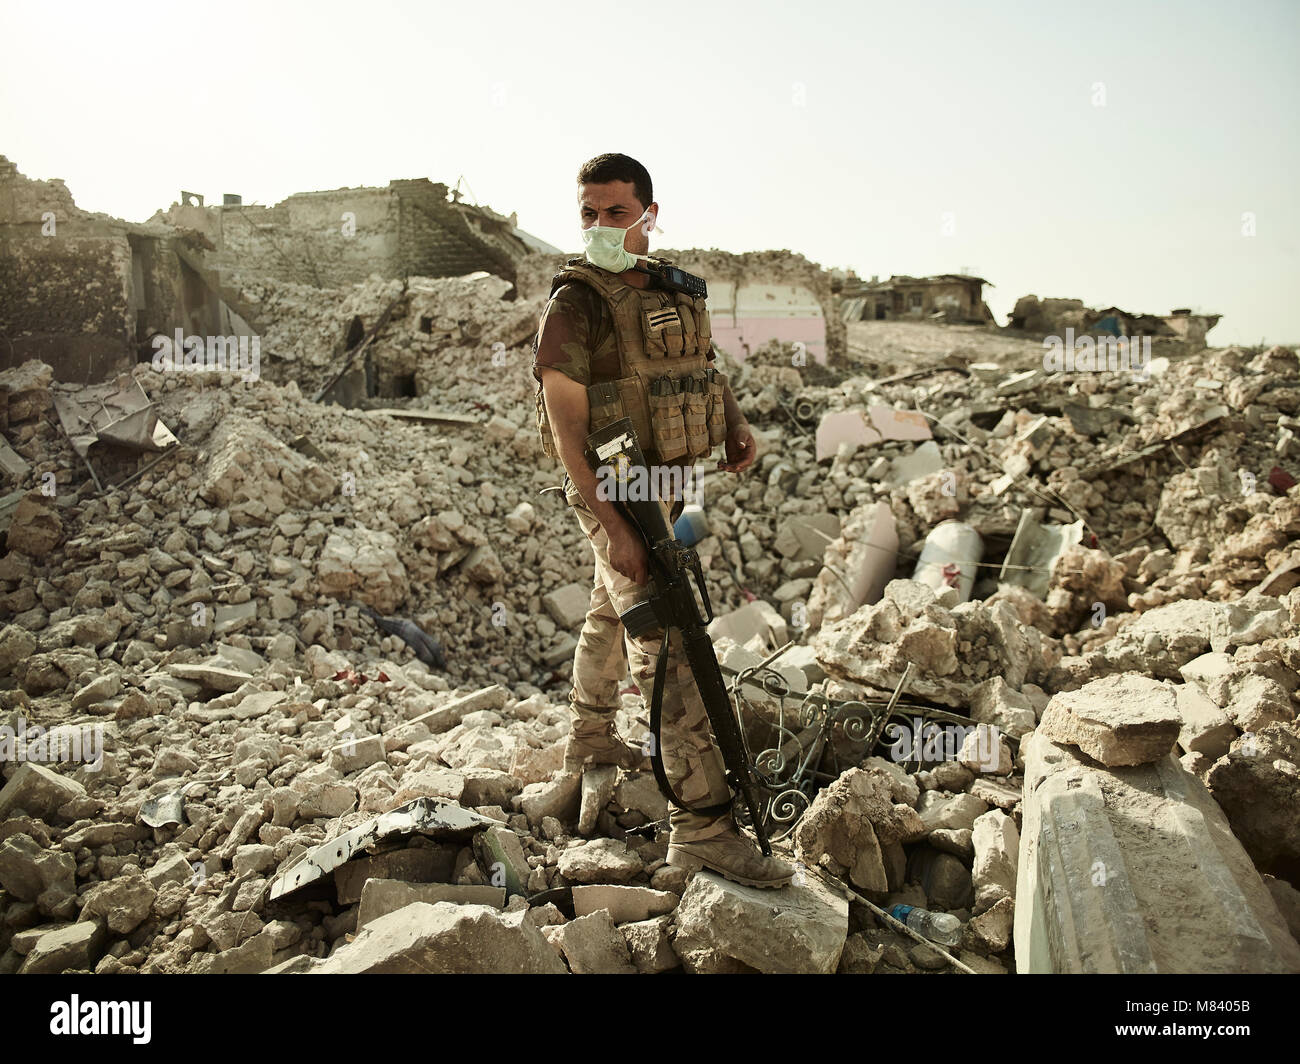 Ein irakischer Soldat steht in der Krater von einem Luftangriff in der Nähe des Tigris. Die Stadt Mosul im Nordirak hat unter islamischen Staat militanten wurde für 3 Jahre, seit Juni 2014. Im Juli 2017 die Streitkräfte der Koalition geführt von der irakischen Armee hat endlich befreit die Stadt aus der Hand von Terroristen. Stockfoto